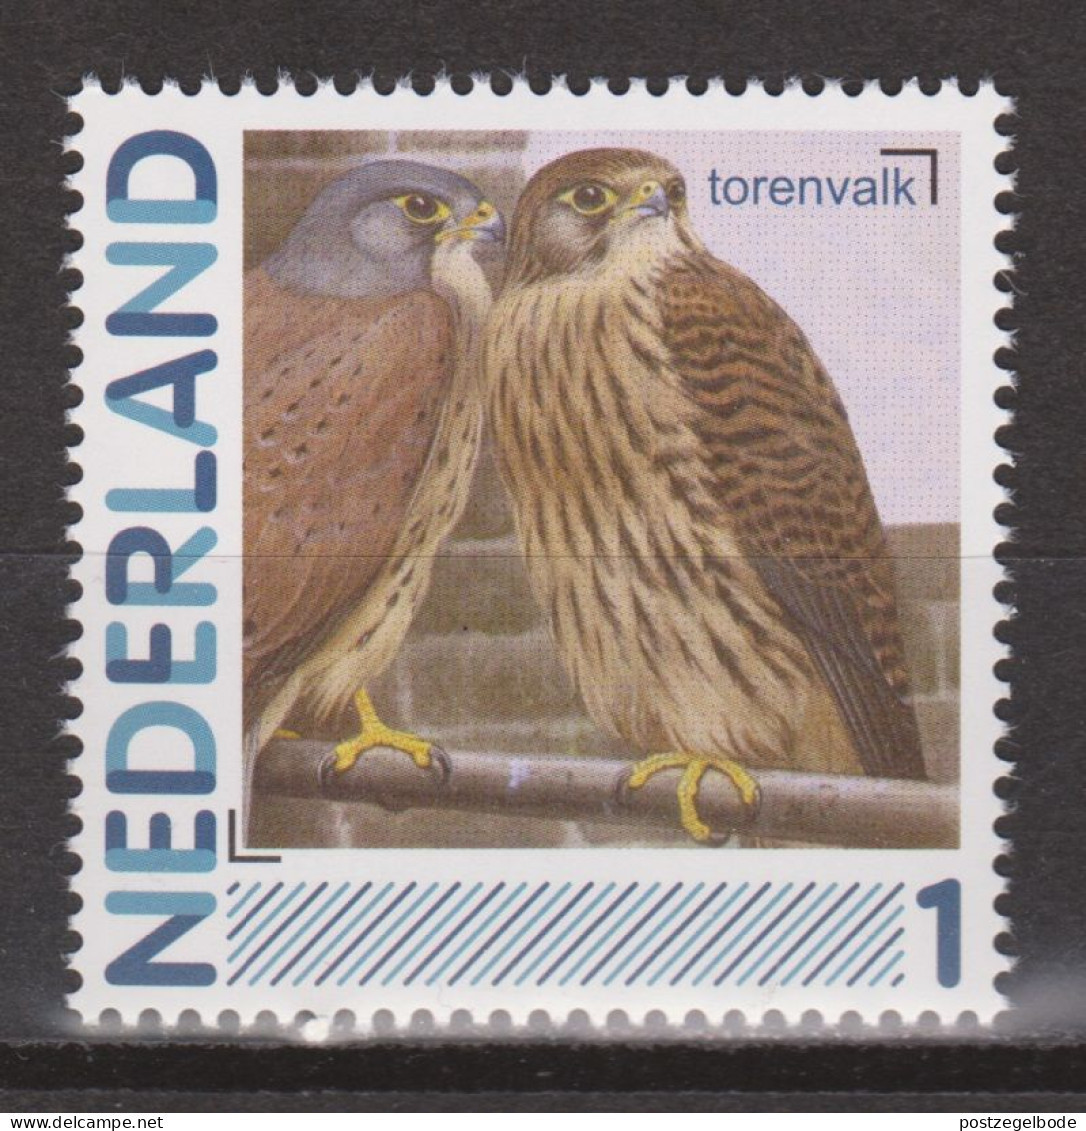 Nederland Netherlands Pays Bas MNH Roofvogel Oiseau De Proie Ave De Rapina Bird Of Prey Falcon Faucon Cerricalo Valk - Aigles & Rapaces Diurnes